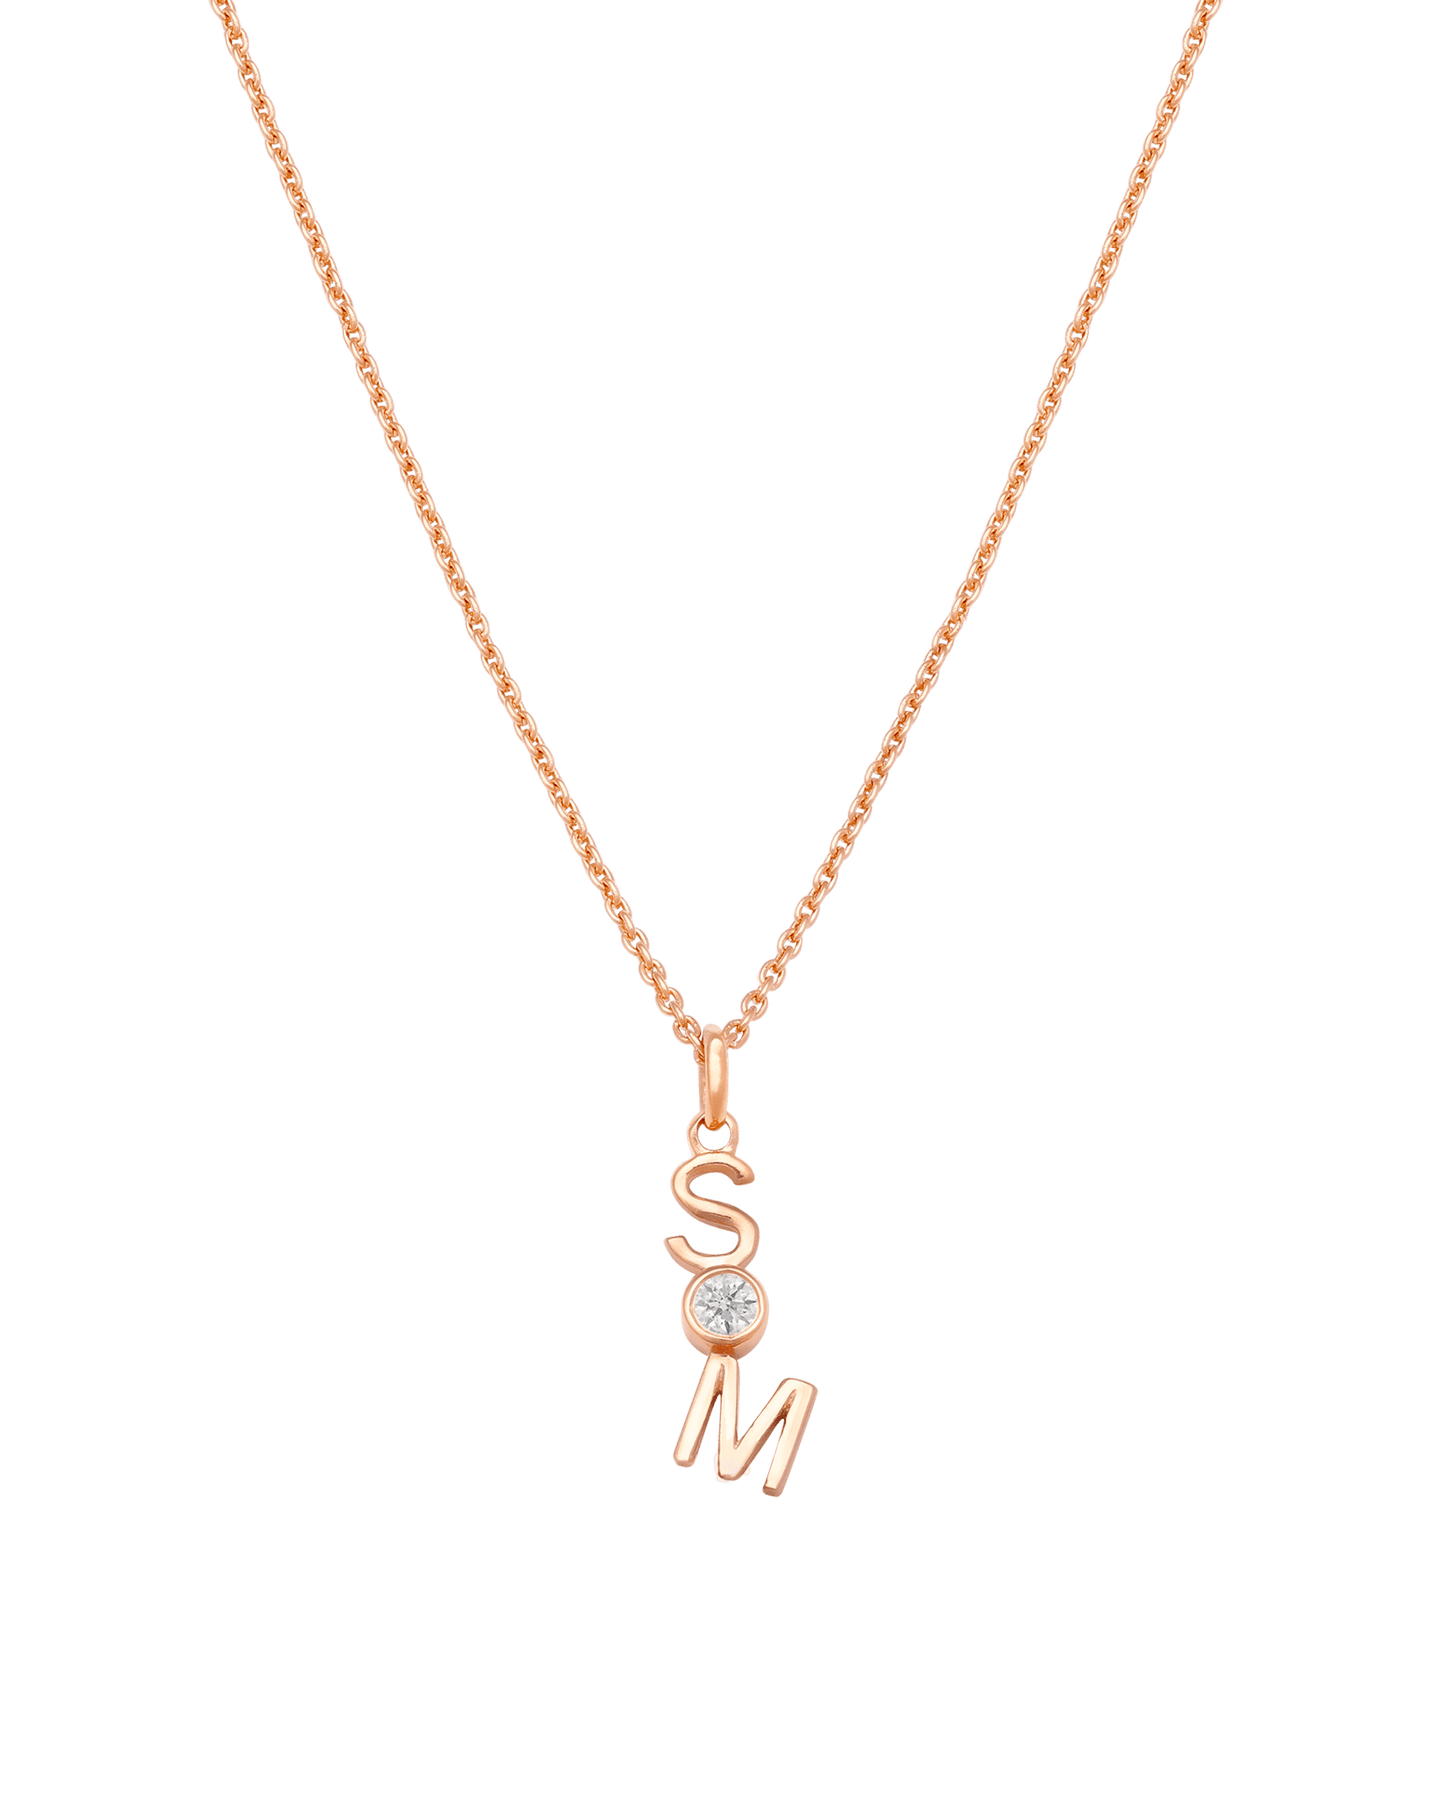 Verti Necklace - 18K Gold Vermeil Necklaces Gold Vermeil 